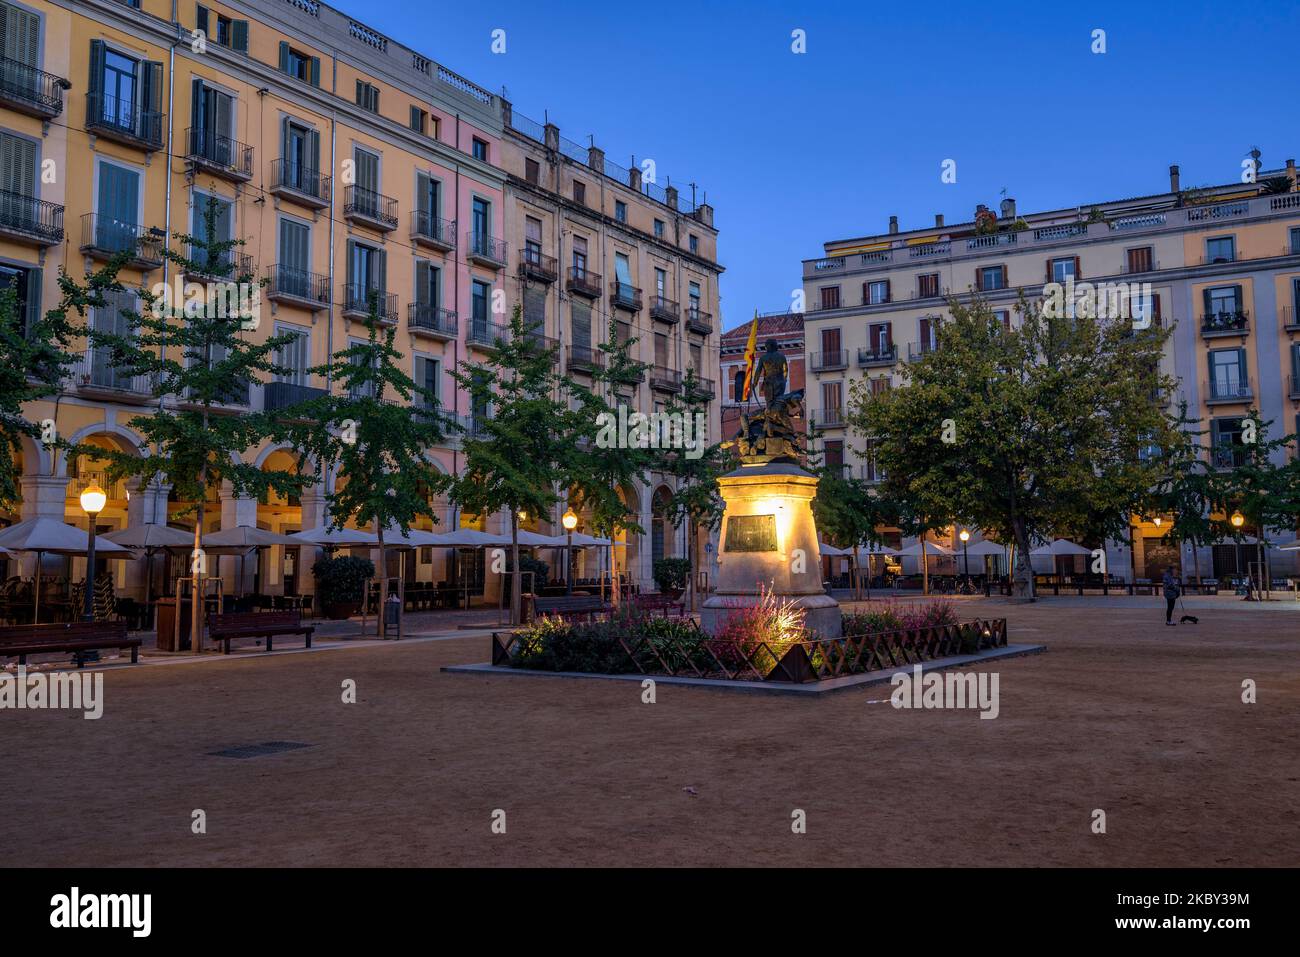 Independence square at blue hour and night (Girona, Catalonia, Spain) ESP: Plaza de la Independencia en la hora azul y de noche (Gerona, Cataluña) Stock Photo